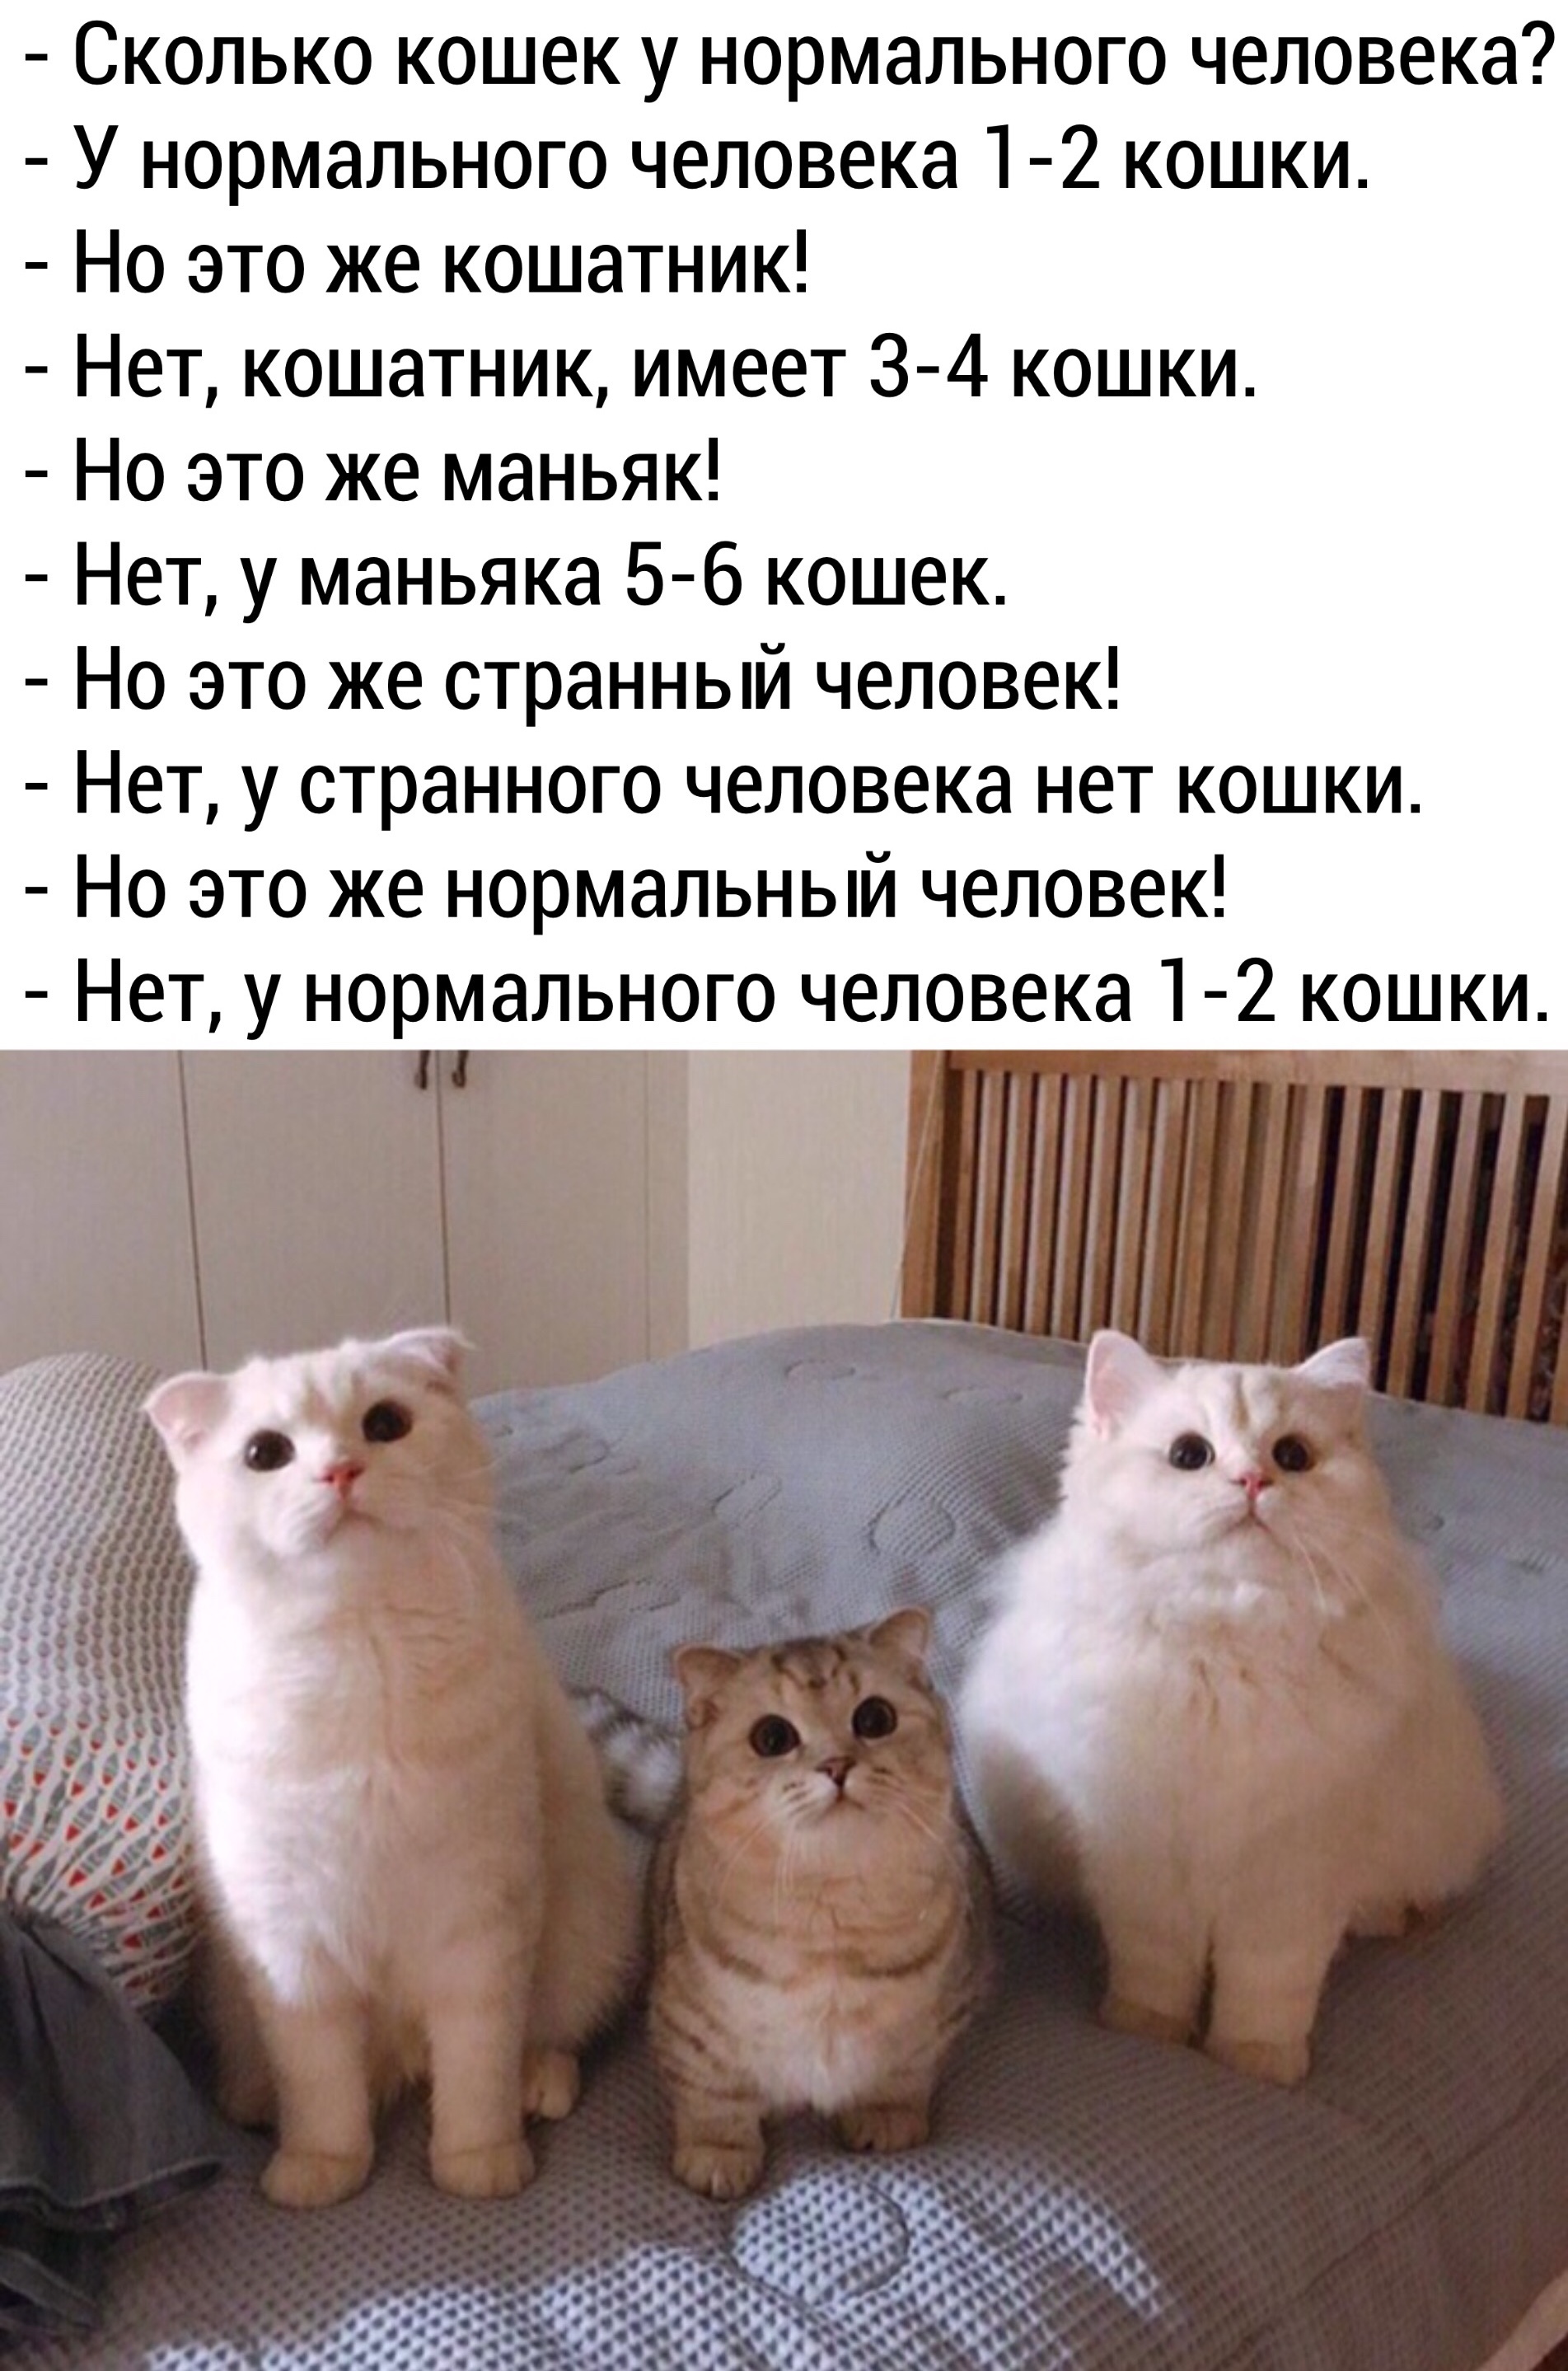 Сколько новая кошка. 1-2 Кота это нормальный человек. Сколько кошек у нормального человека 1-2 кошки. Нормальный человек это один кот. У нормального человека два кота.